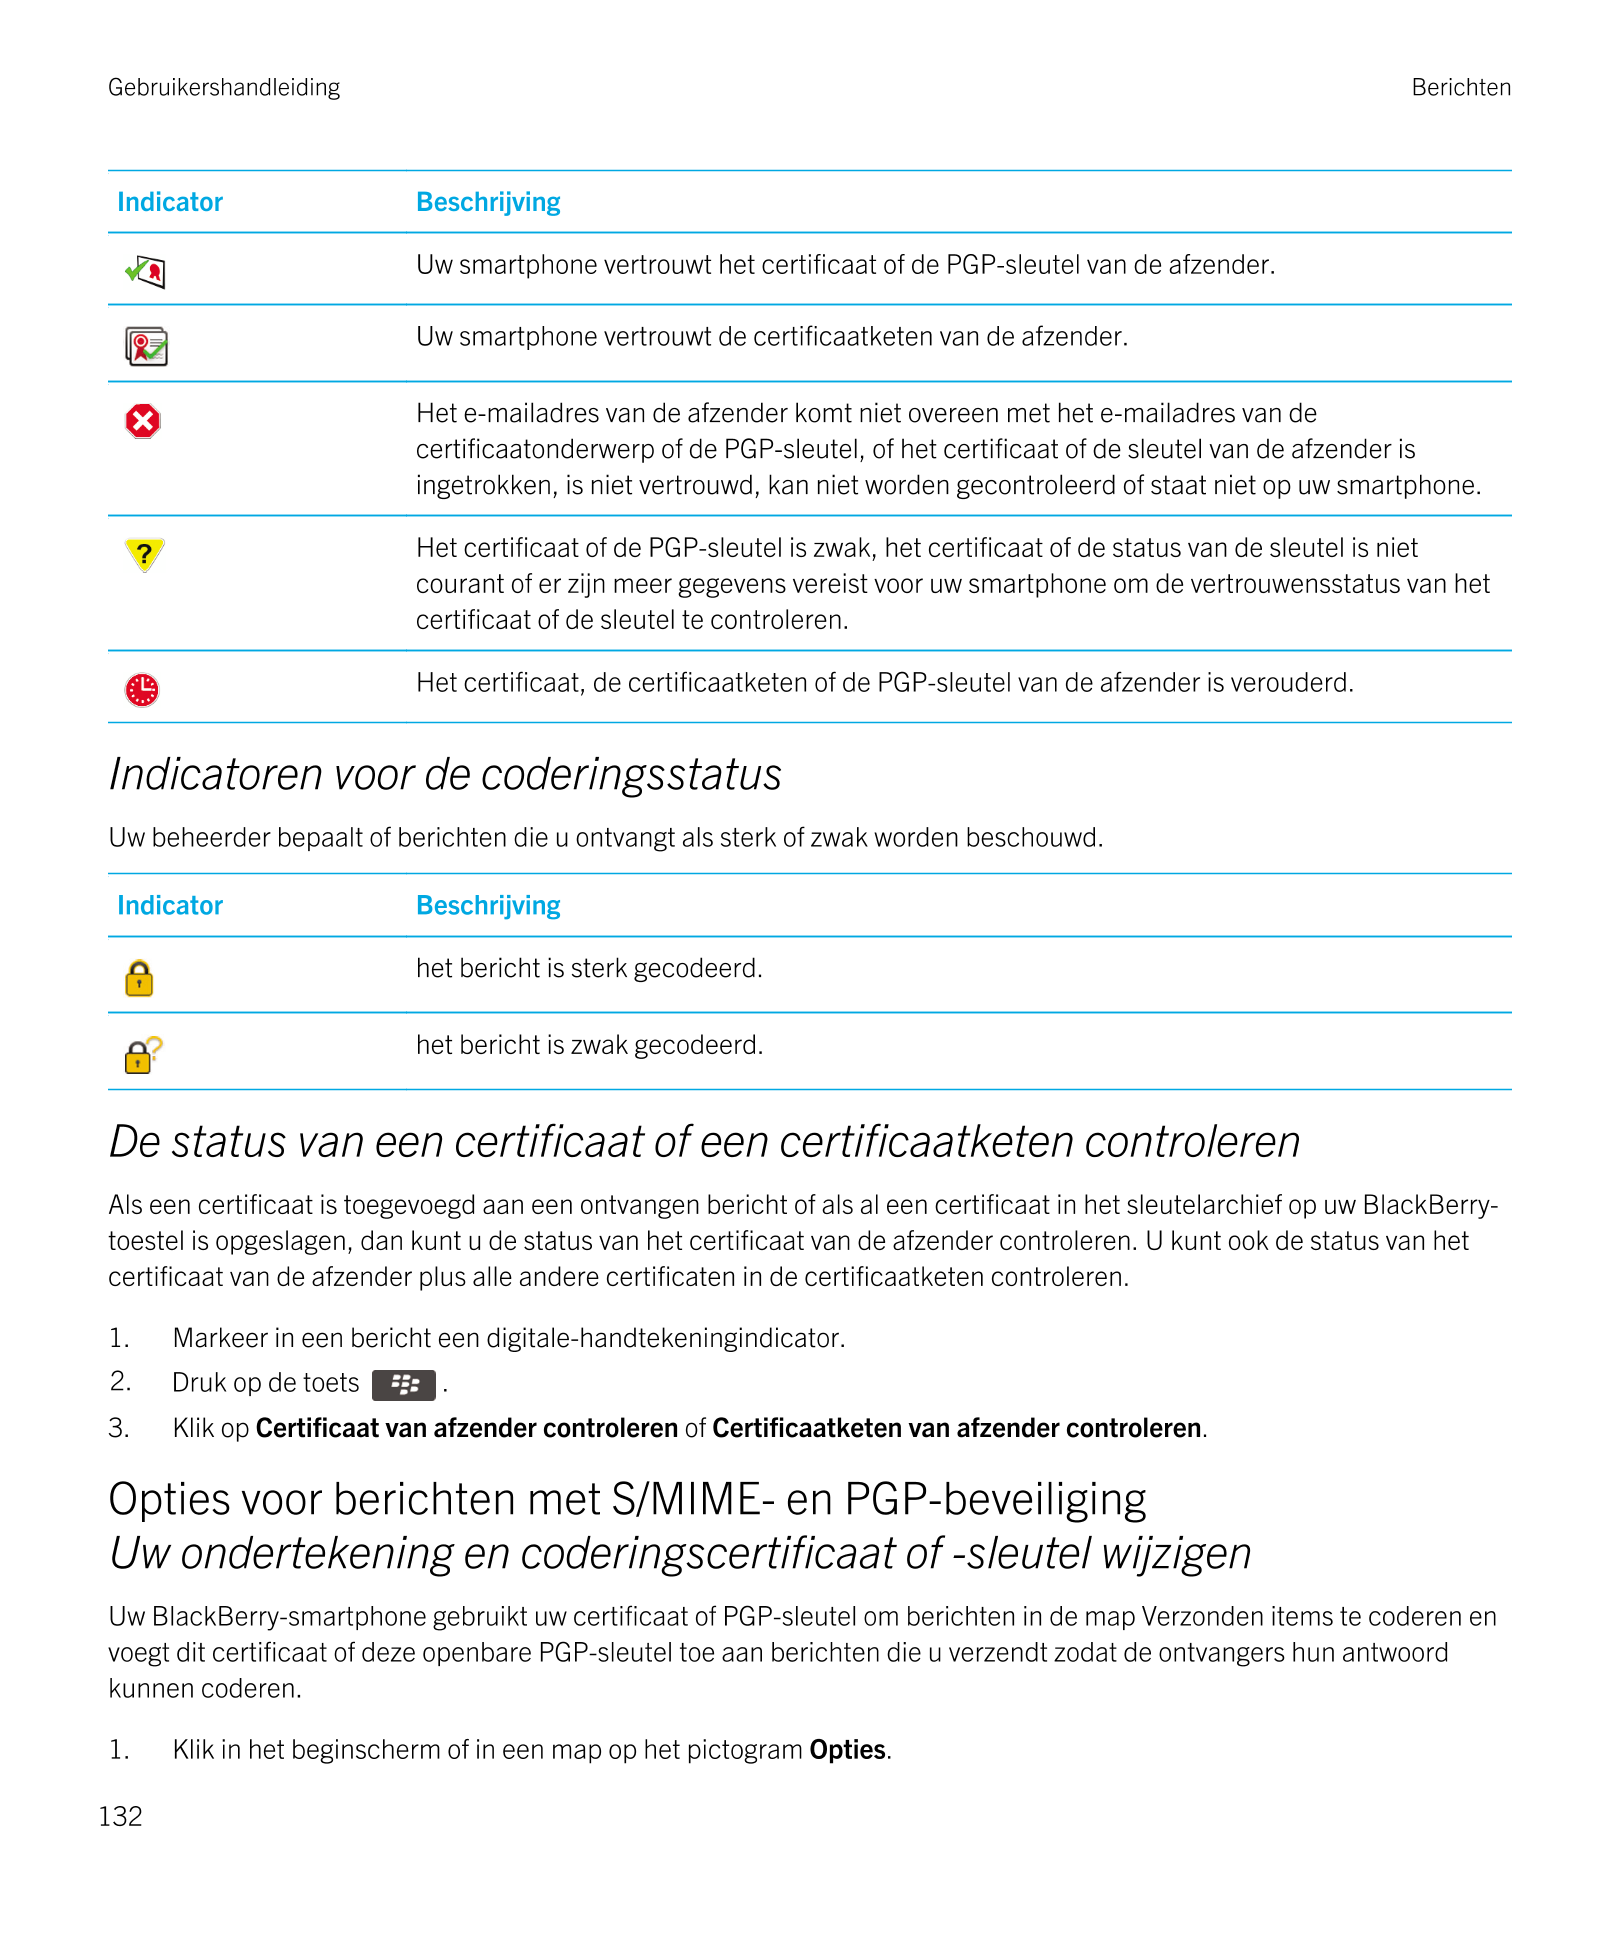 Gebruikershandleiding Berichten
Indicator Beschrijving
Uw smartphone vertrouwt het certificaat of de  PGP-sleutel van de afzende